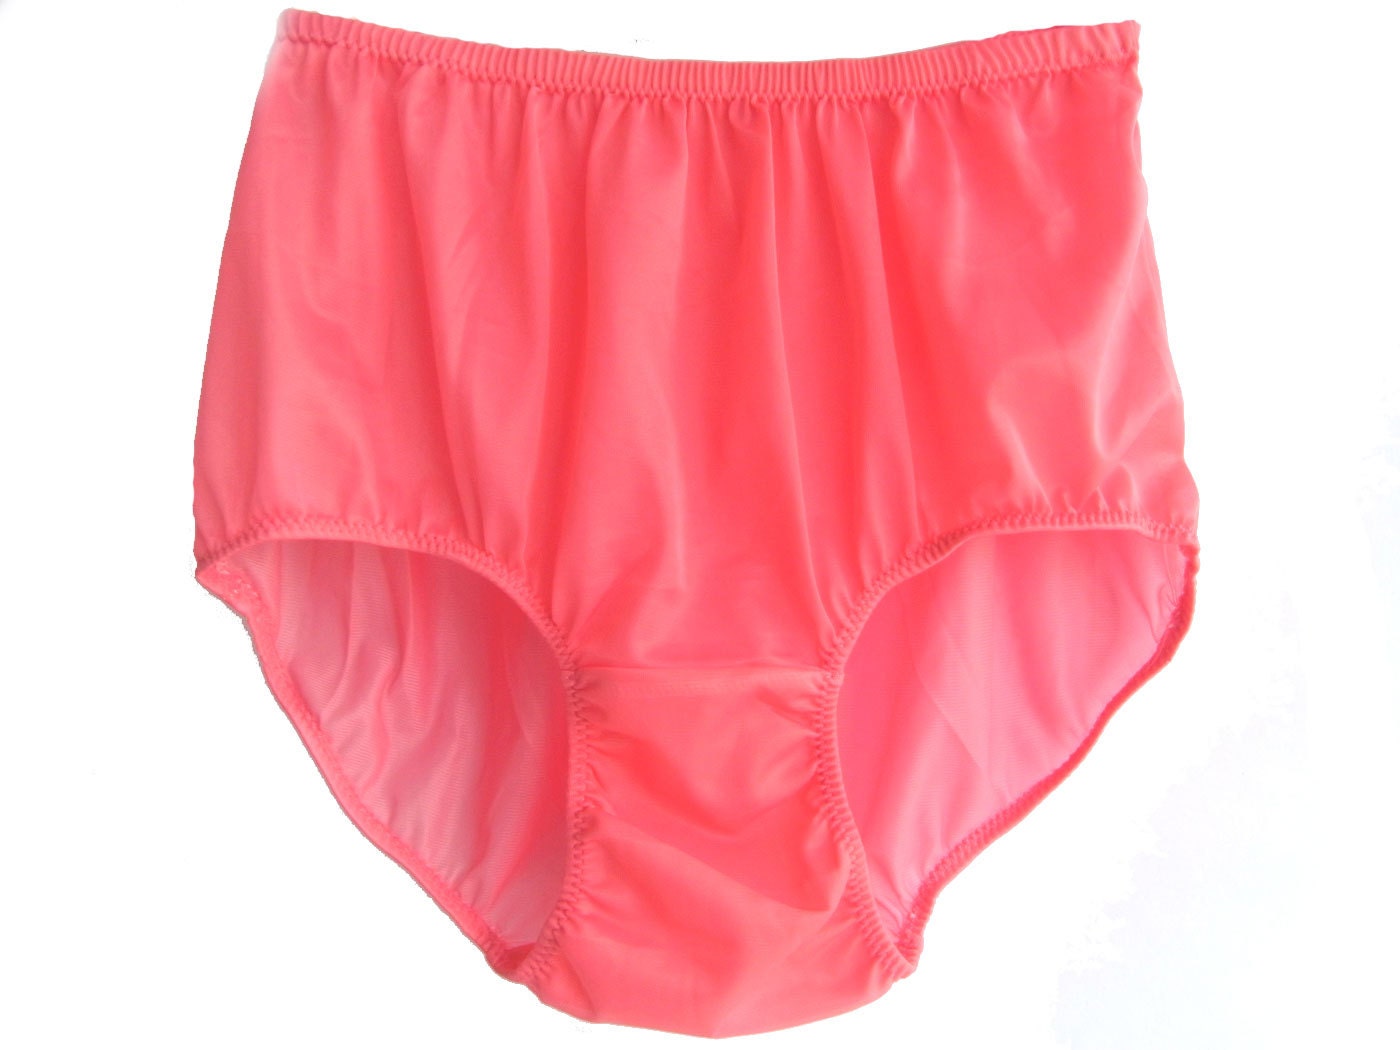 Pklgpk Light Pink Lingerie Underwear Sheer Nylon Women Briefs